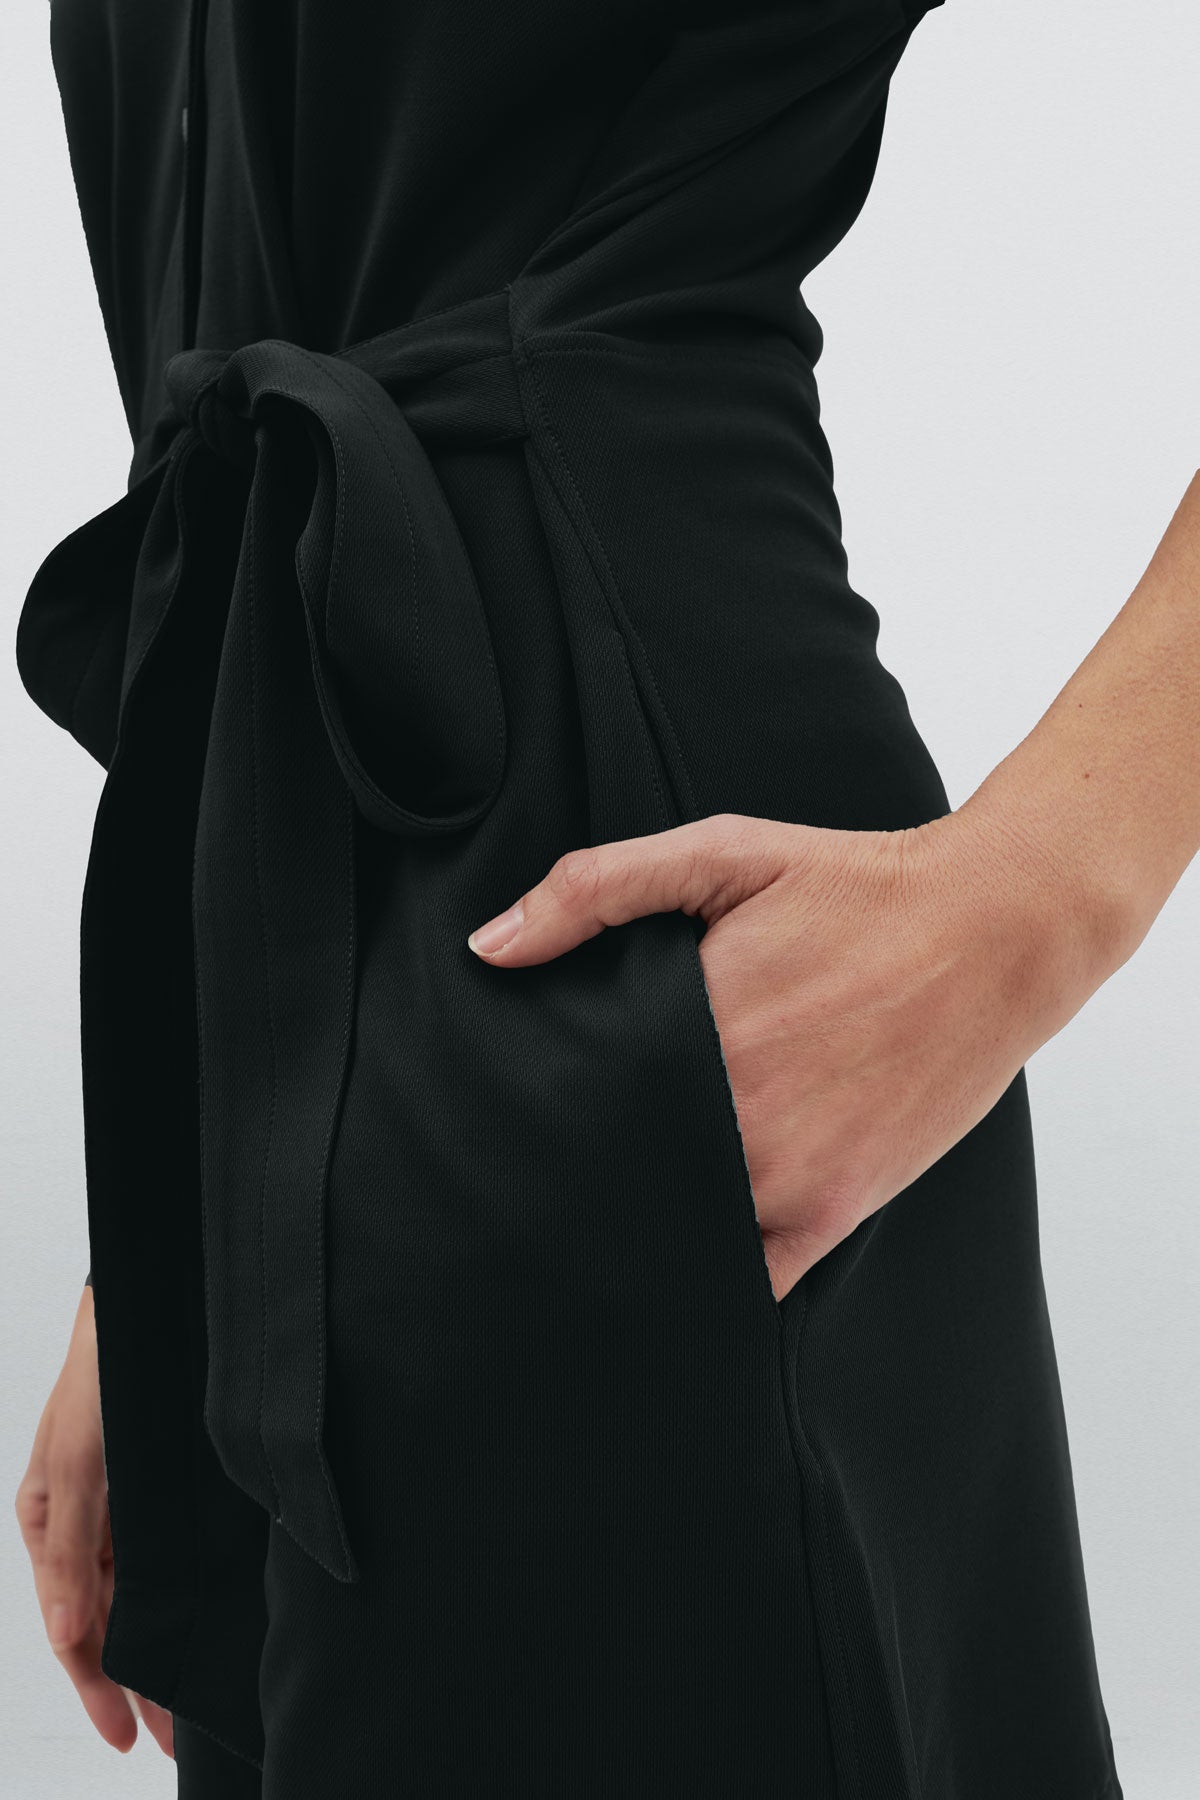 Mono corto de mujer color negro con detalle de cinturón y bolsillos laterales para mayor comodidad. Foto detalle